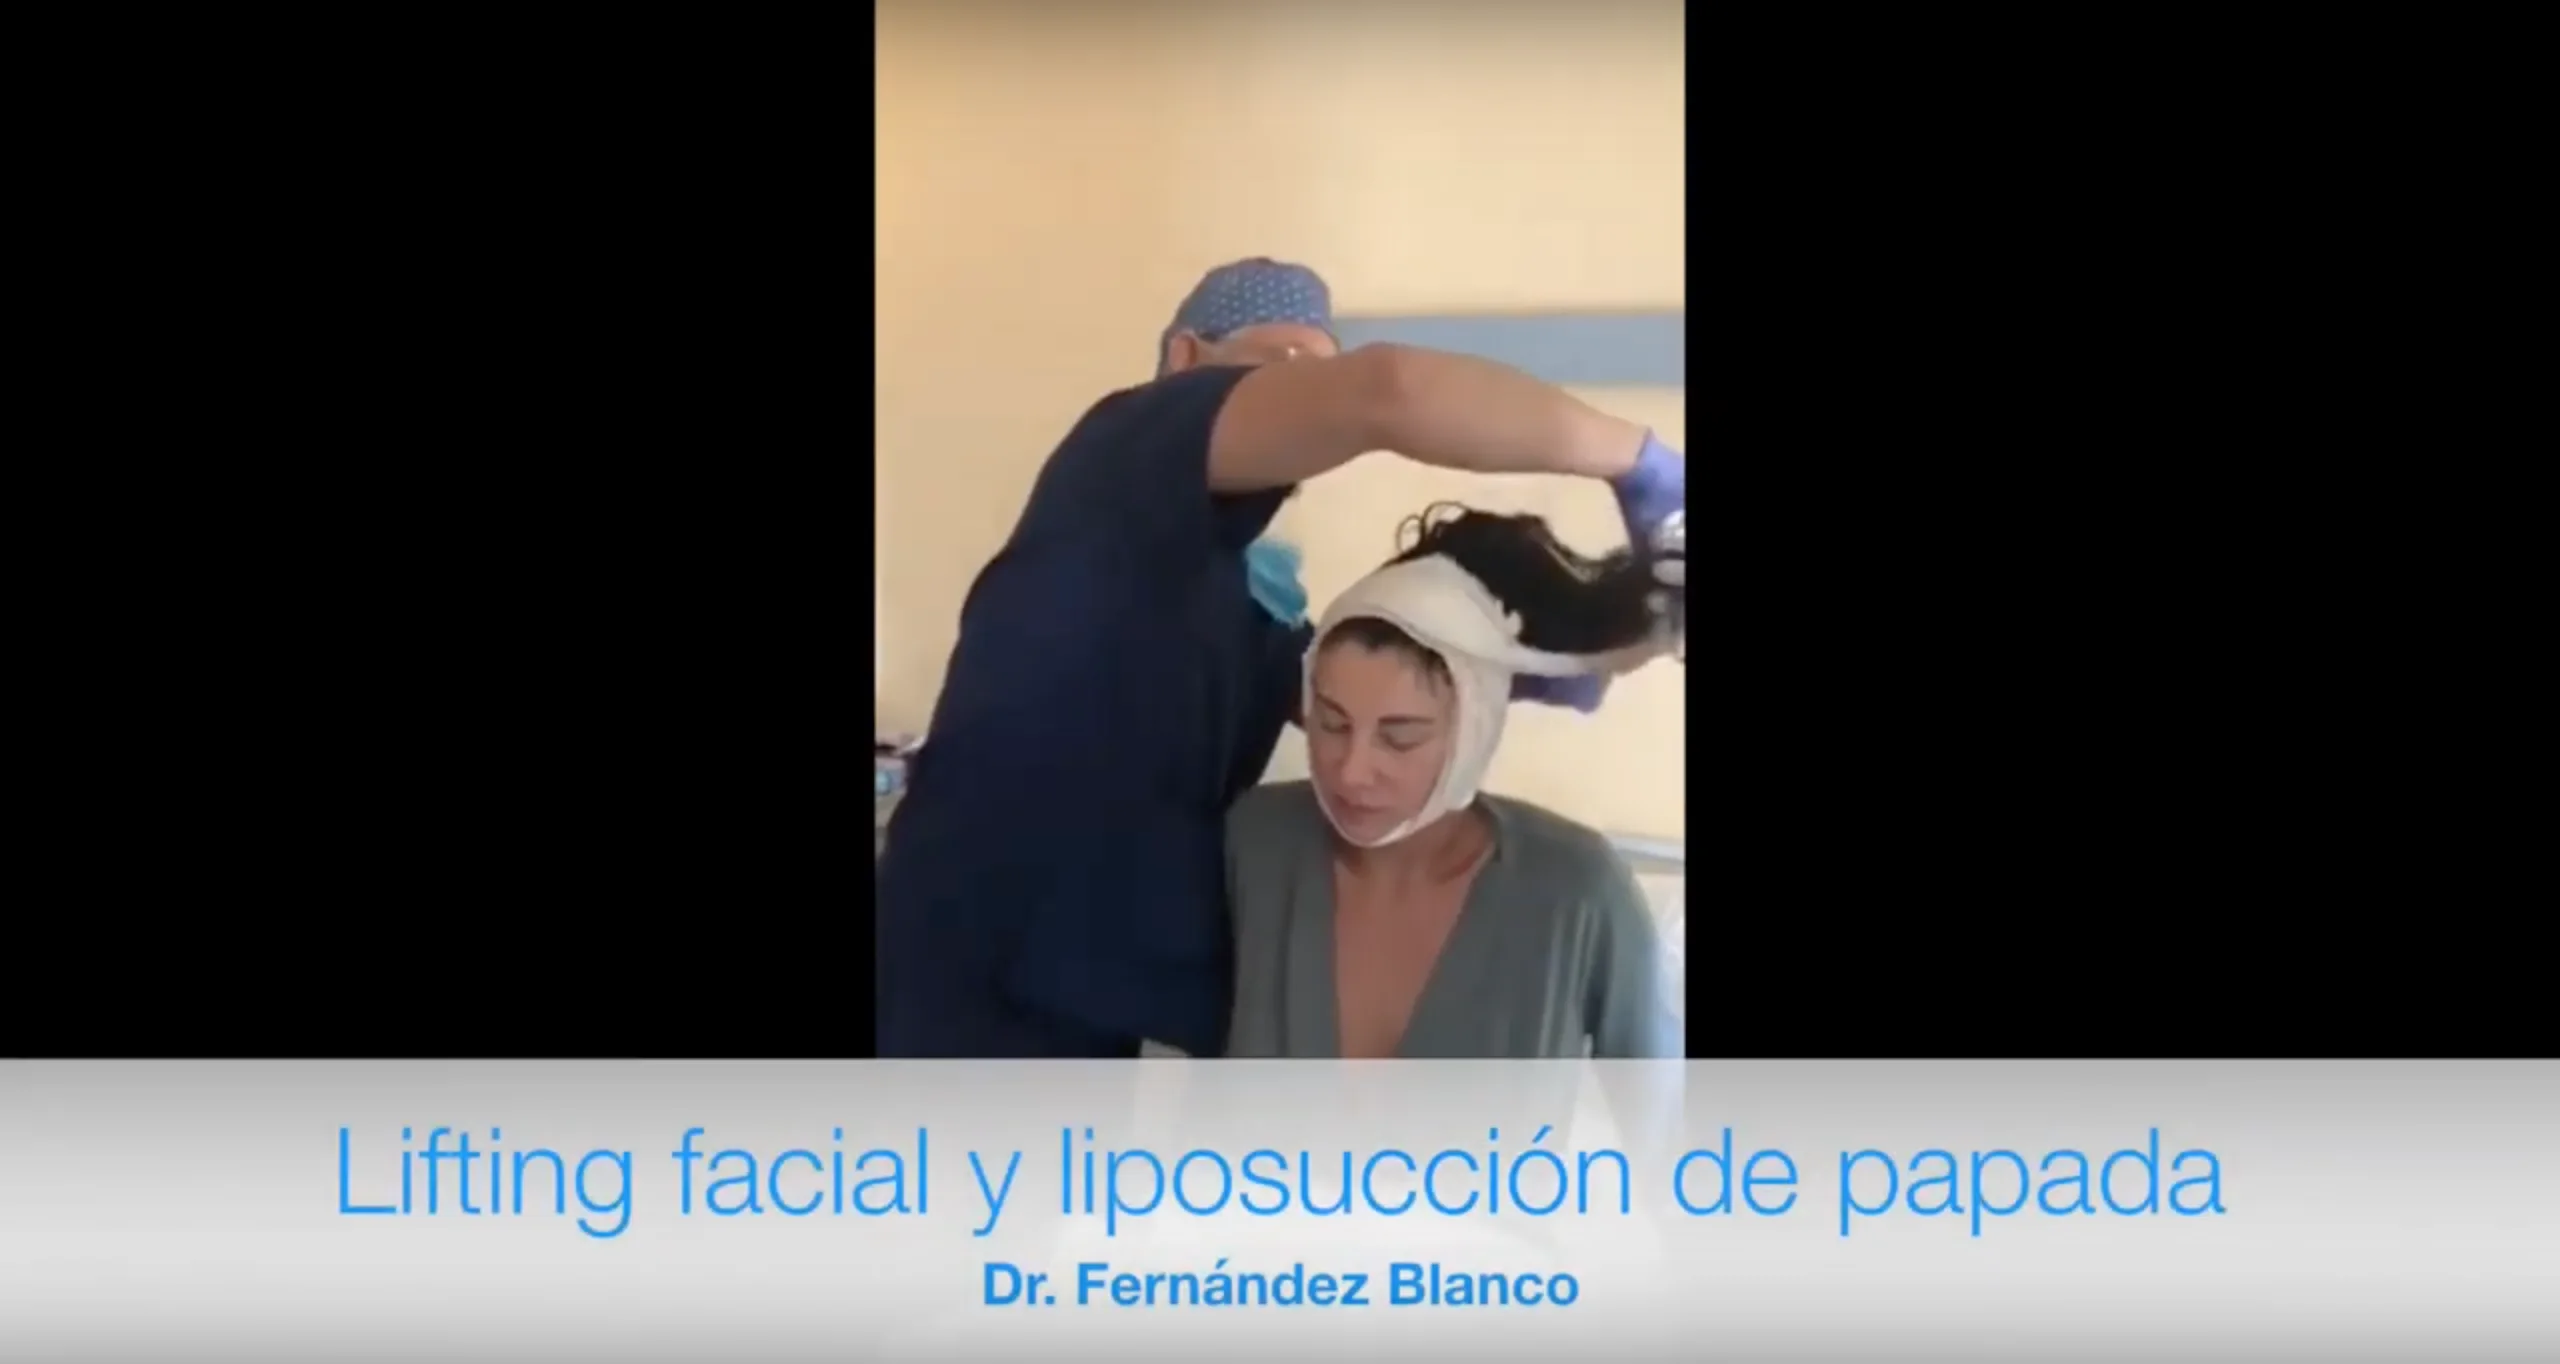 Videoblog mostrando los resultados que una paciente de lifting facial y liposucción papada obtuvo al operarse en la Clínica FB